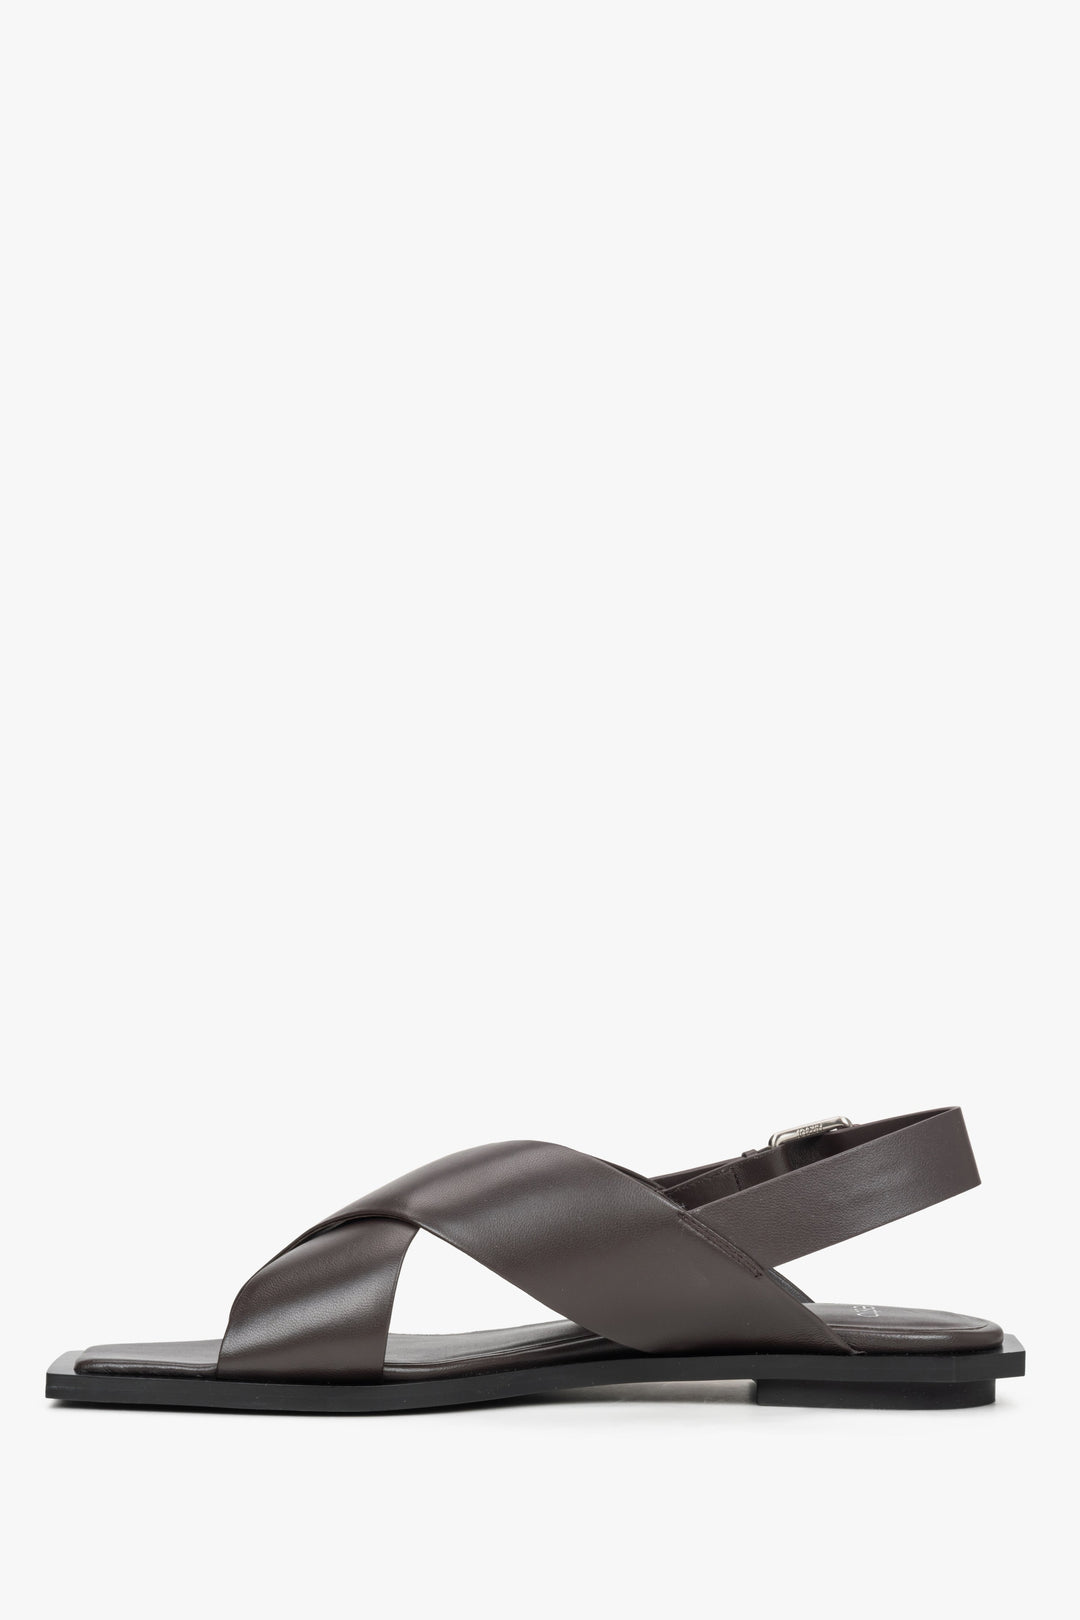 Damskie skórzane sandały damskie Estro, kolor ciemnobrązowy - profil buta.